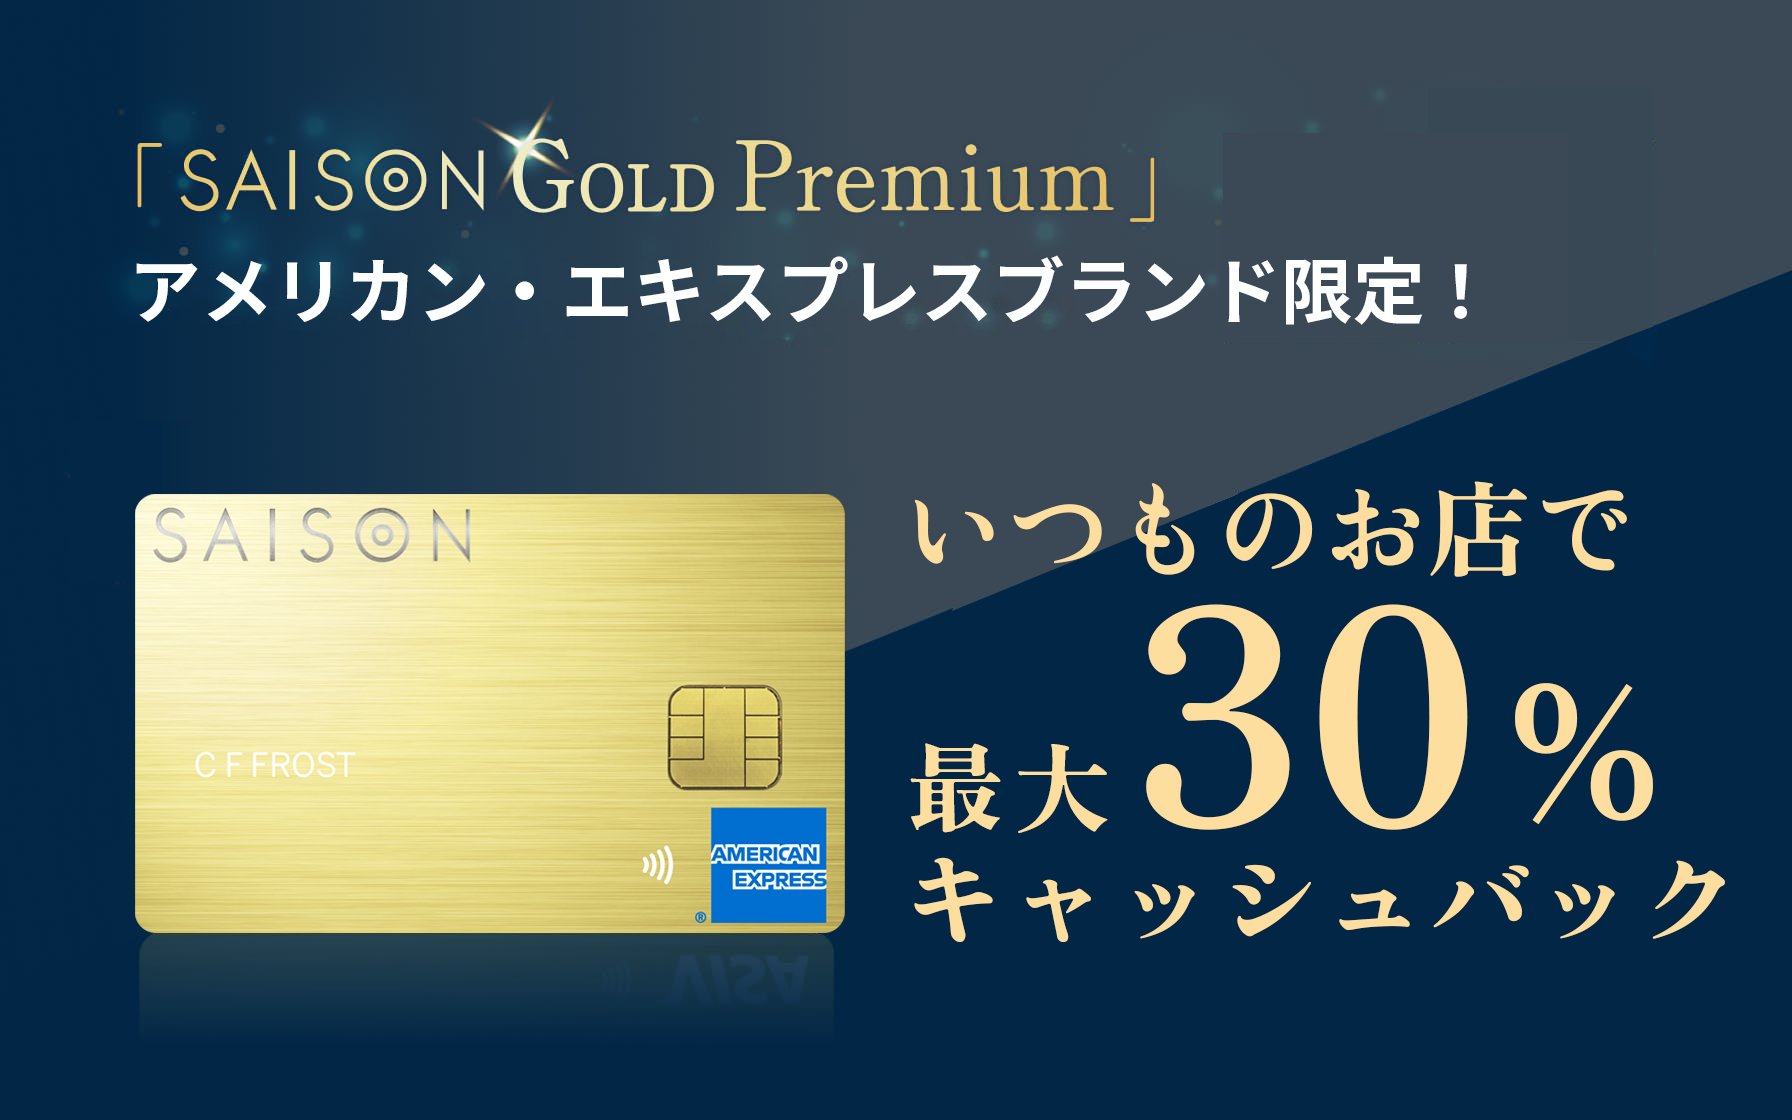 SAISON GOLD Premium アメリカン・エキスプレスブランド限定事前エントリーで対象店舗にて最大30%キャッシュバック